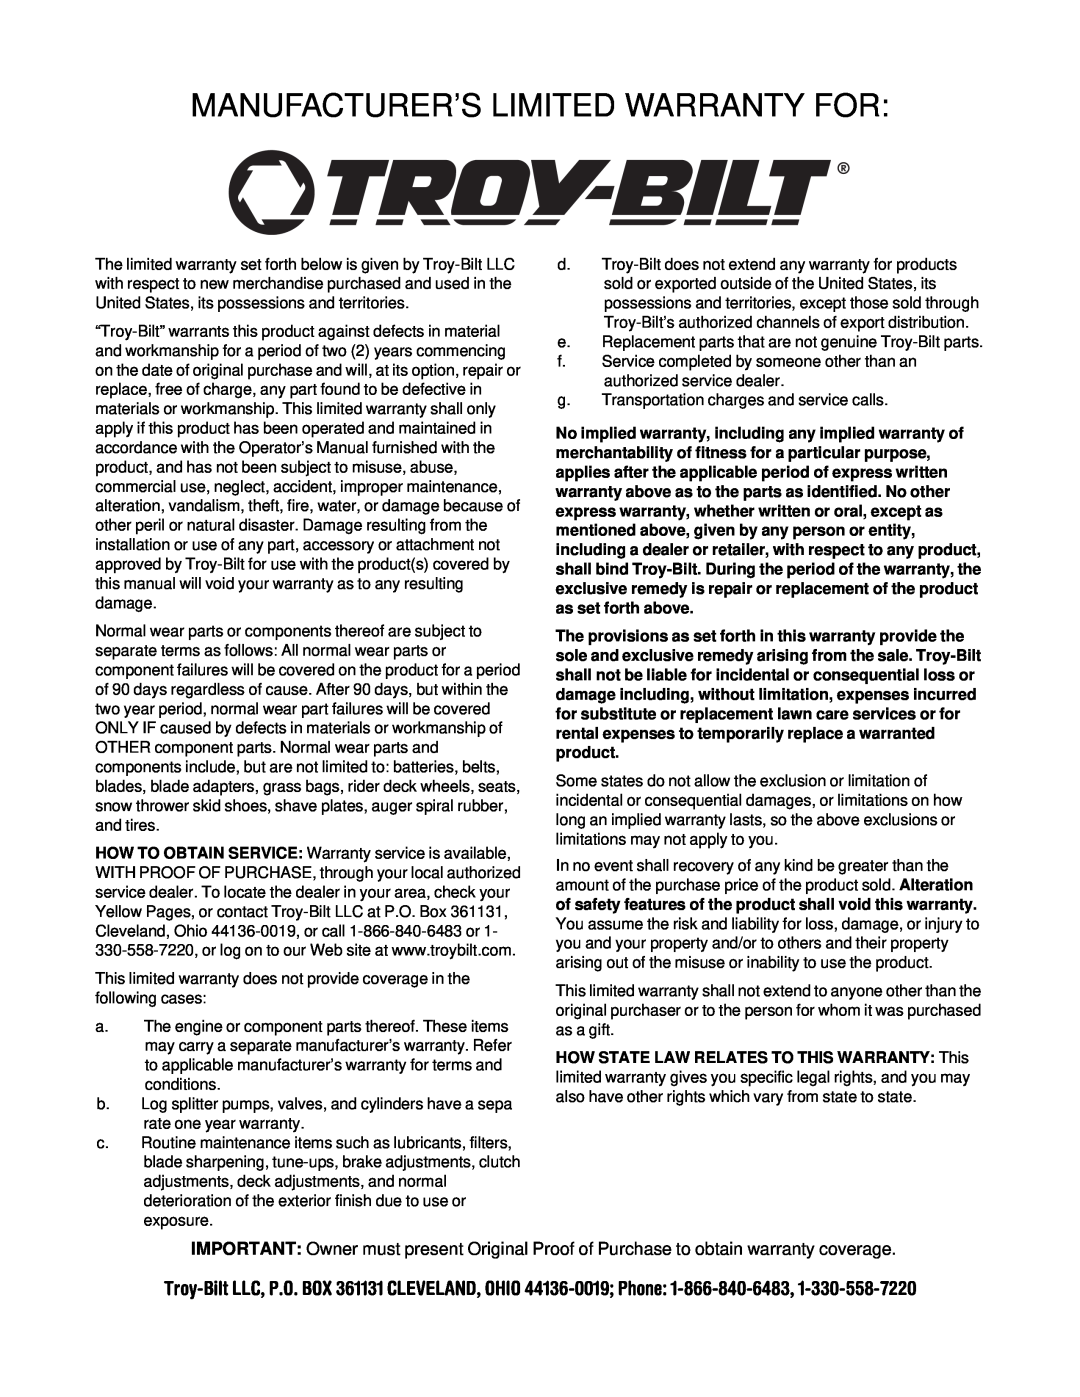 Troy-Bilt 13045 manual Manufacturer’S Limited Warranty For 